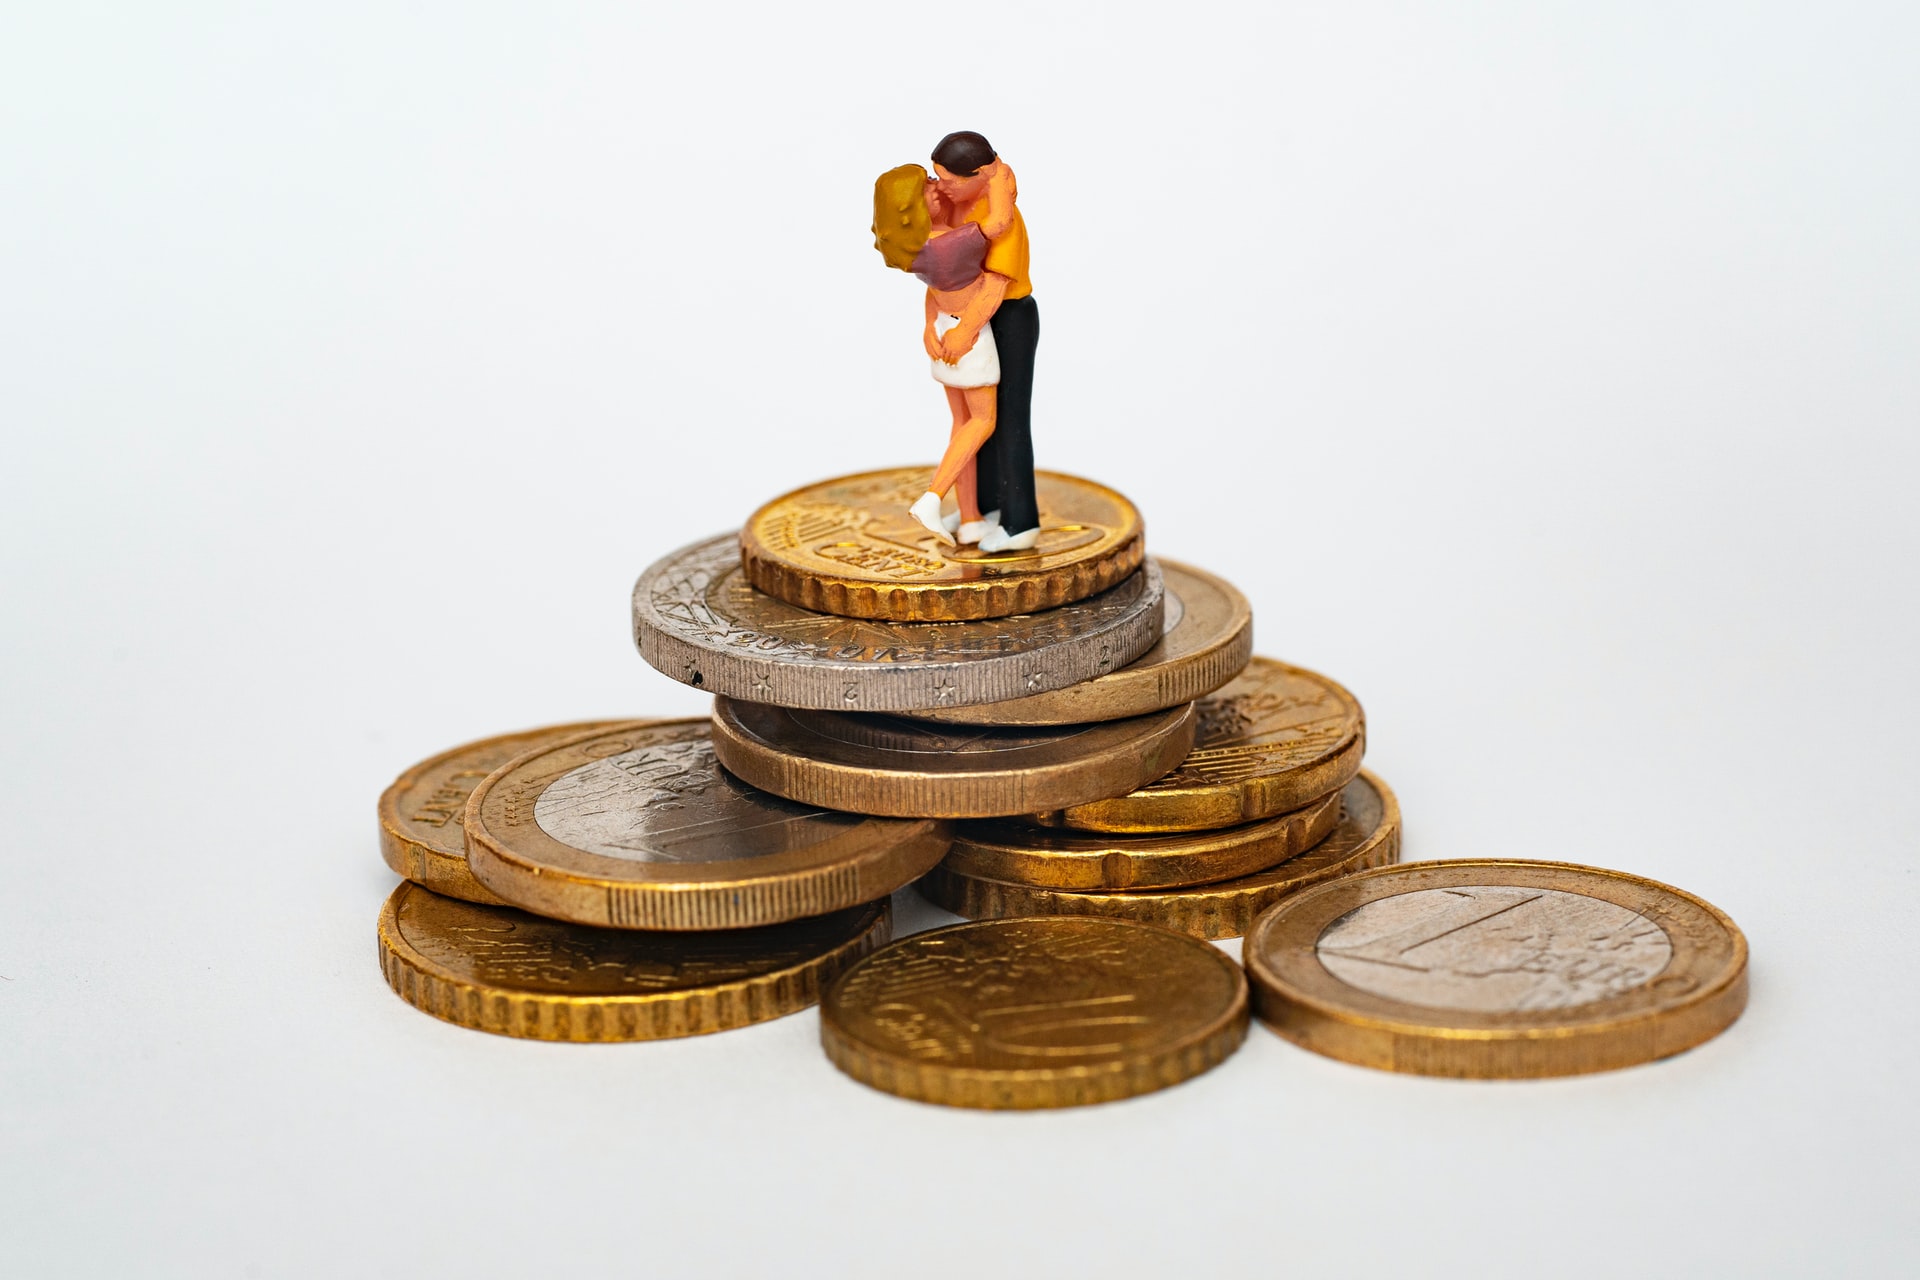 O casal com as finanças organizadas vive mais tranquilo. Fonte: Unsplash.